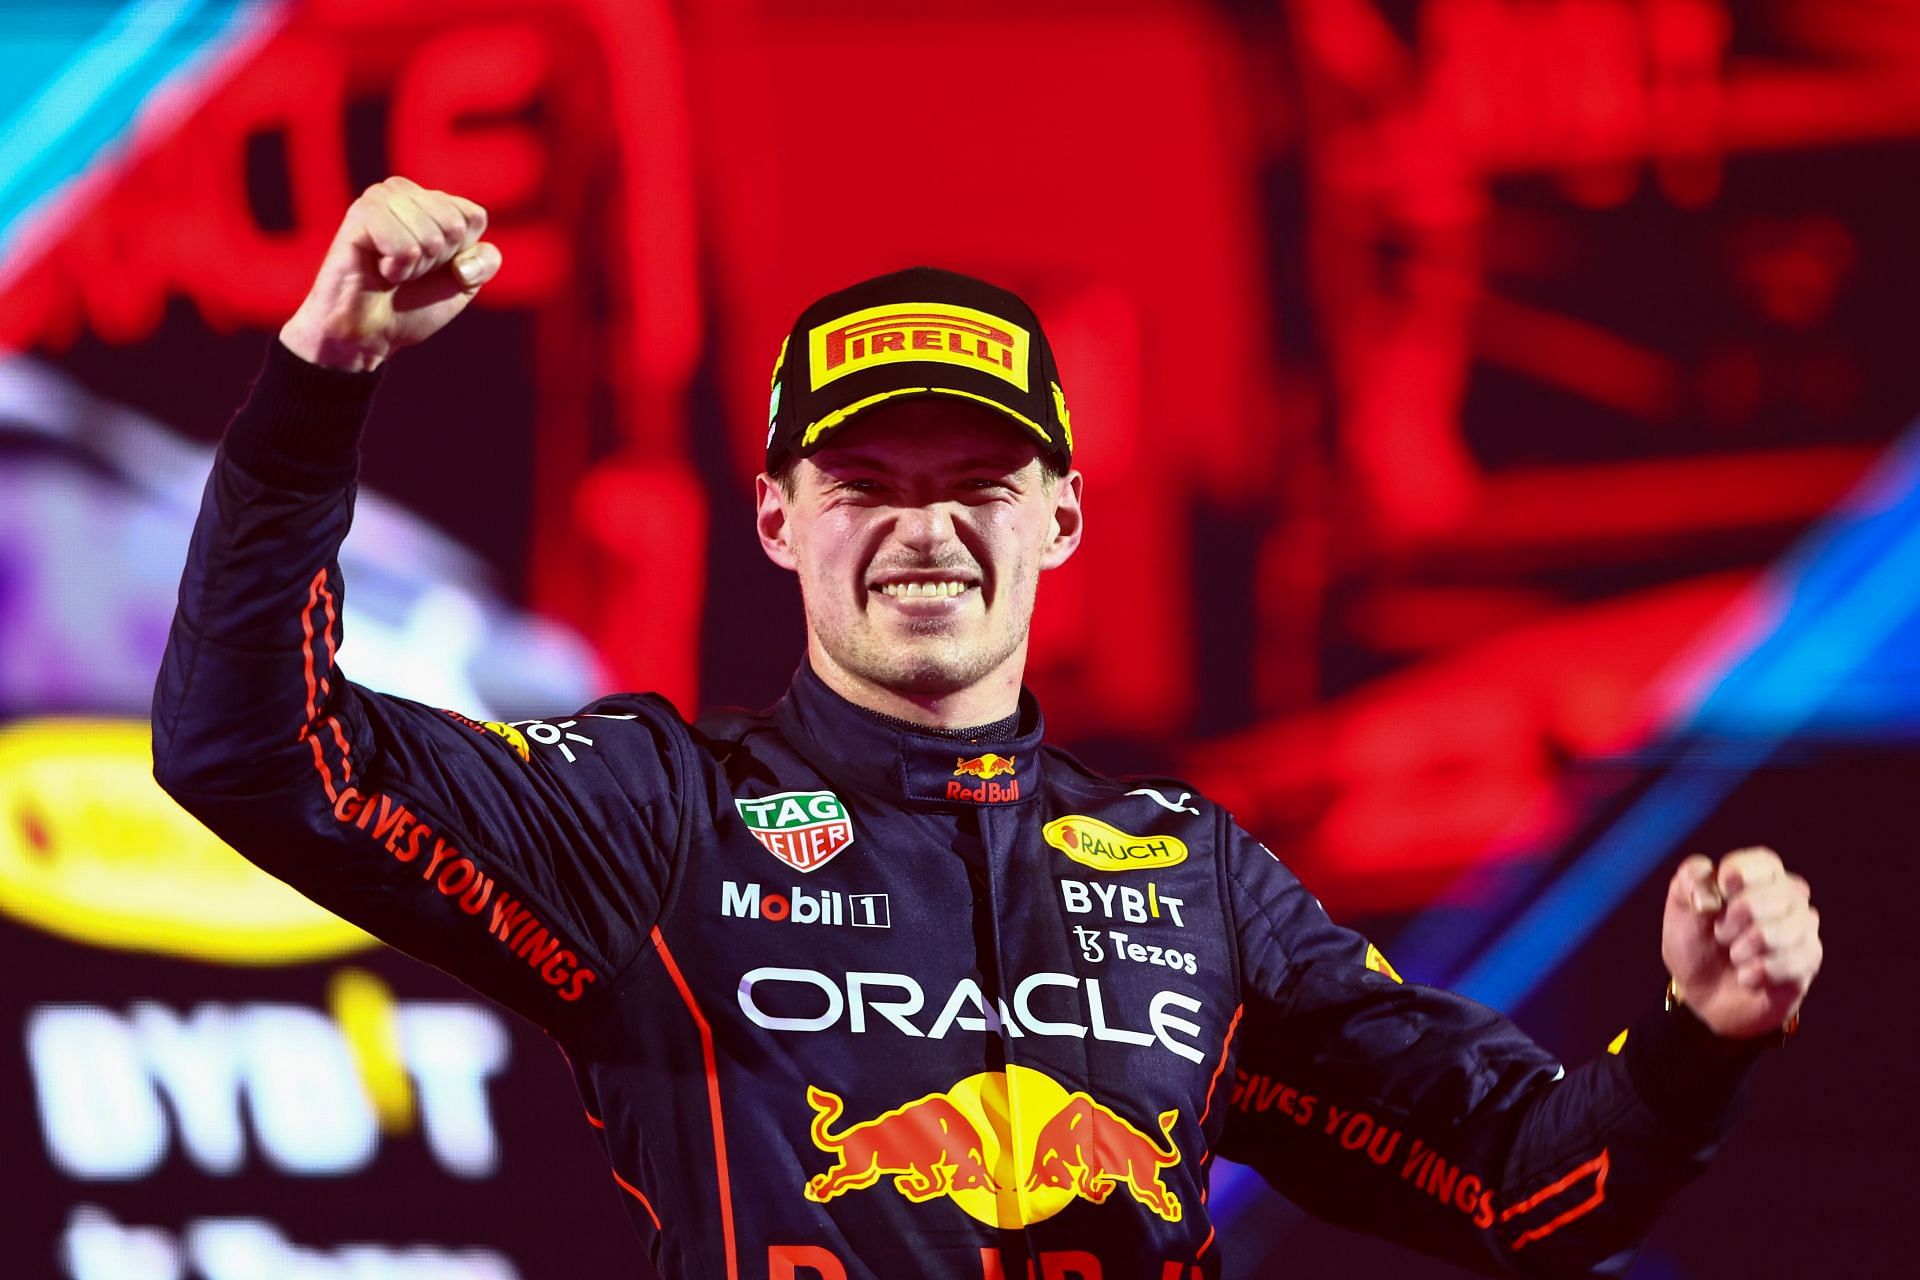 F1 Grand Prix of Saudi Arabia - Max Verstappen wins in Jeddah